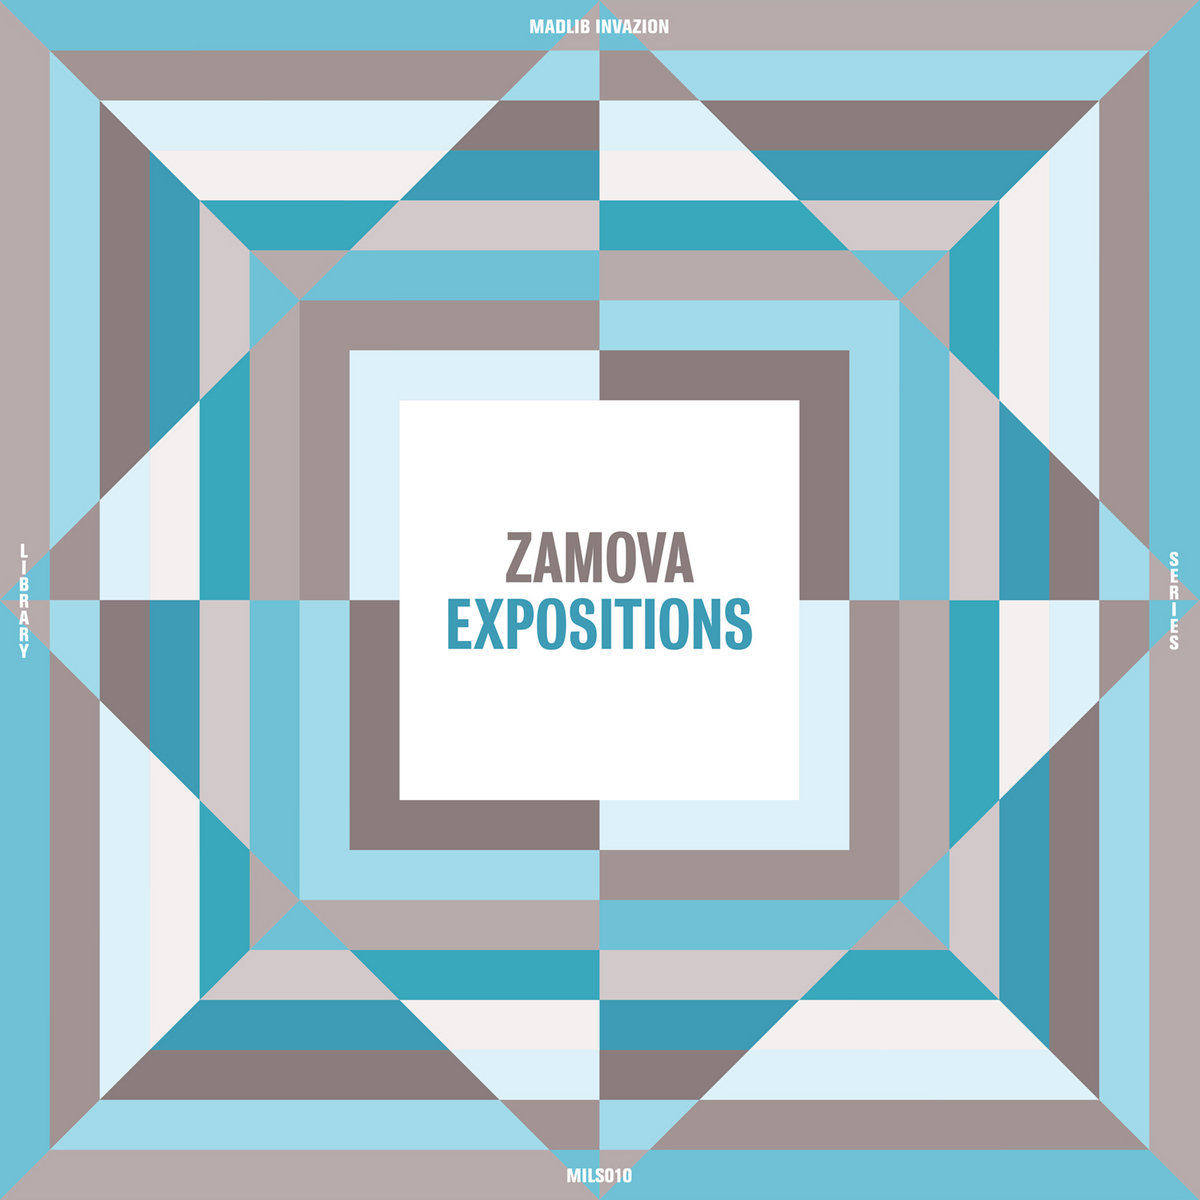 ZAMOVA - EXPOSITIONS